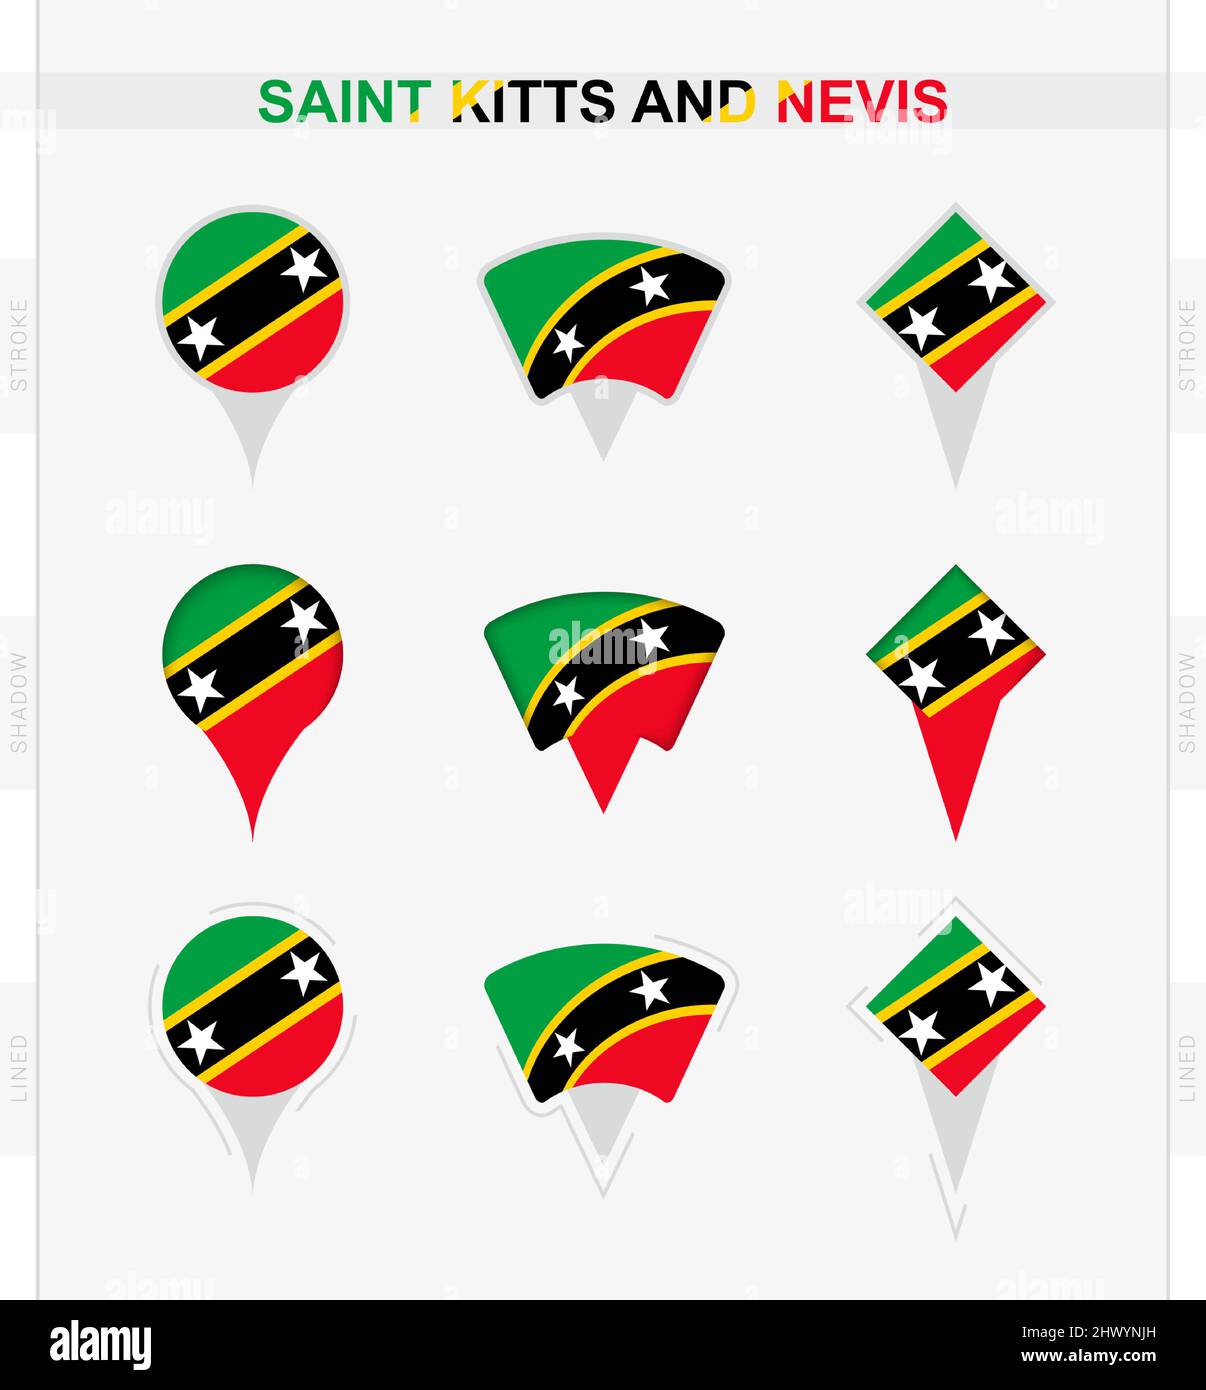 Bandiera di Saint Kitts e Nevis, serie di icone di posizione di Saint Kitts e Nevis bandiera. Illustrazione vettoriale dei simboli nazionali. Illustrazione Vettoriale